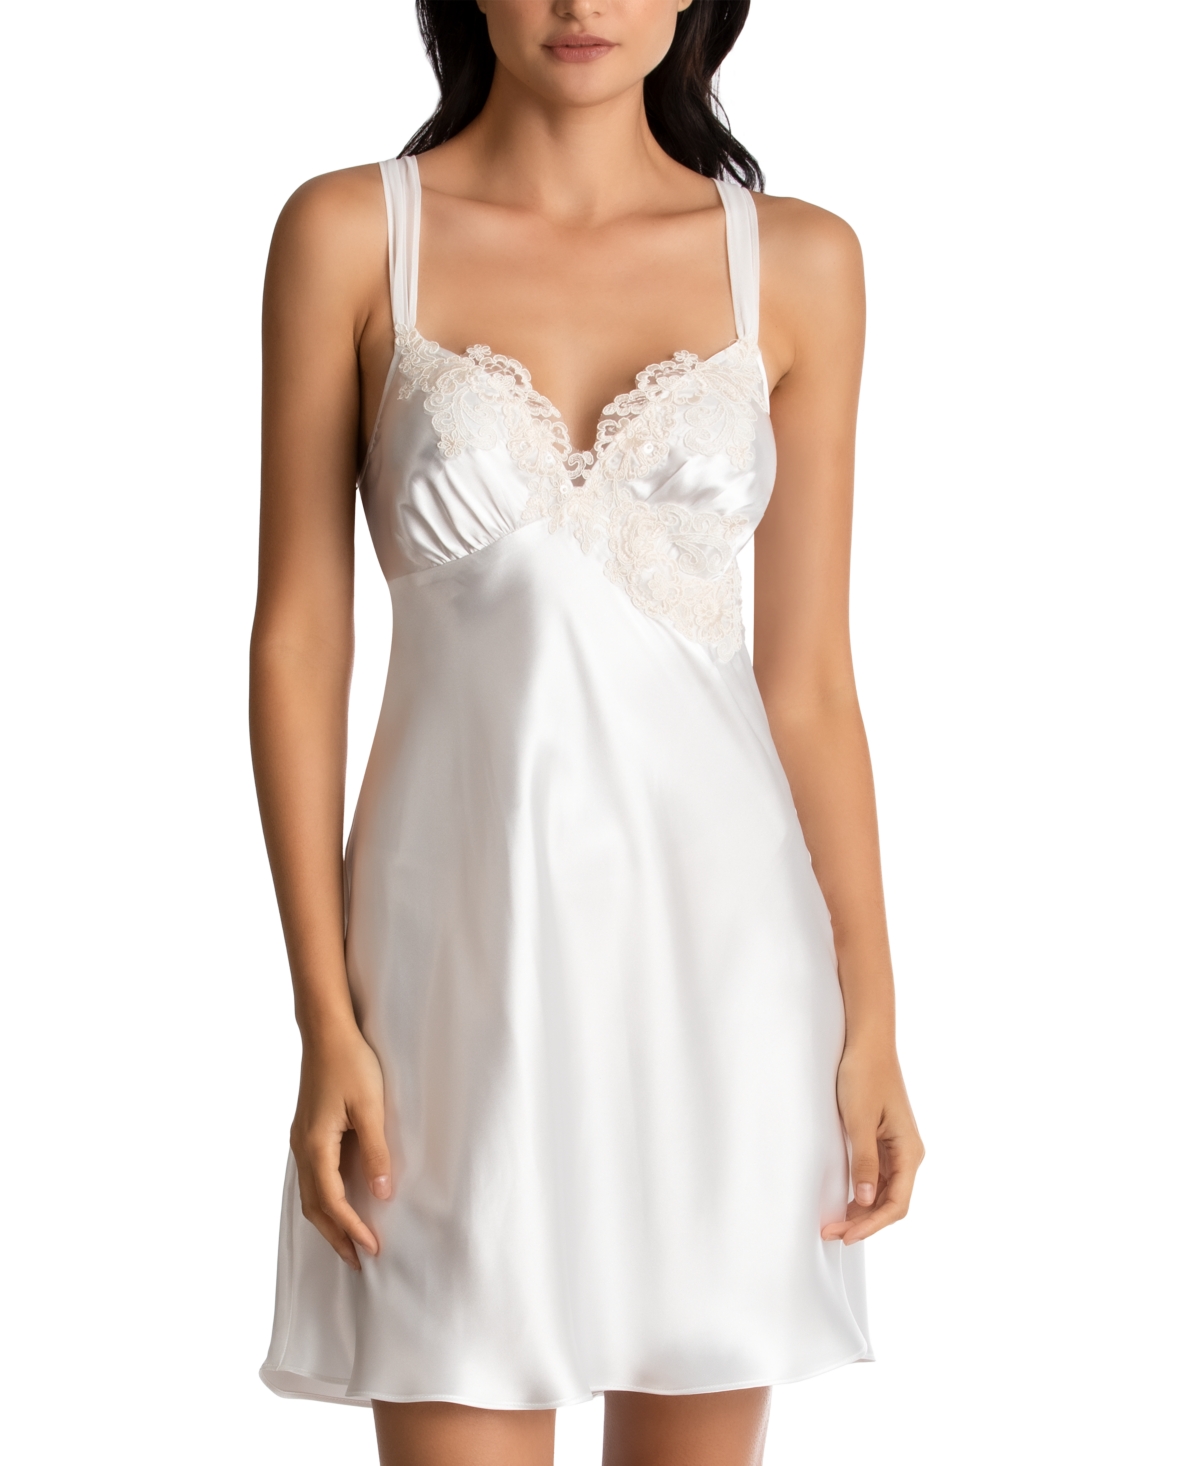 Sonya Embellished Bridal Satin Chemise Nightgown - Ivory